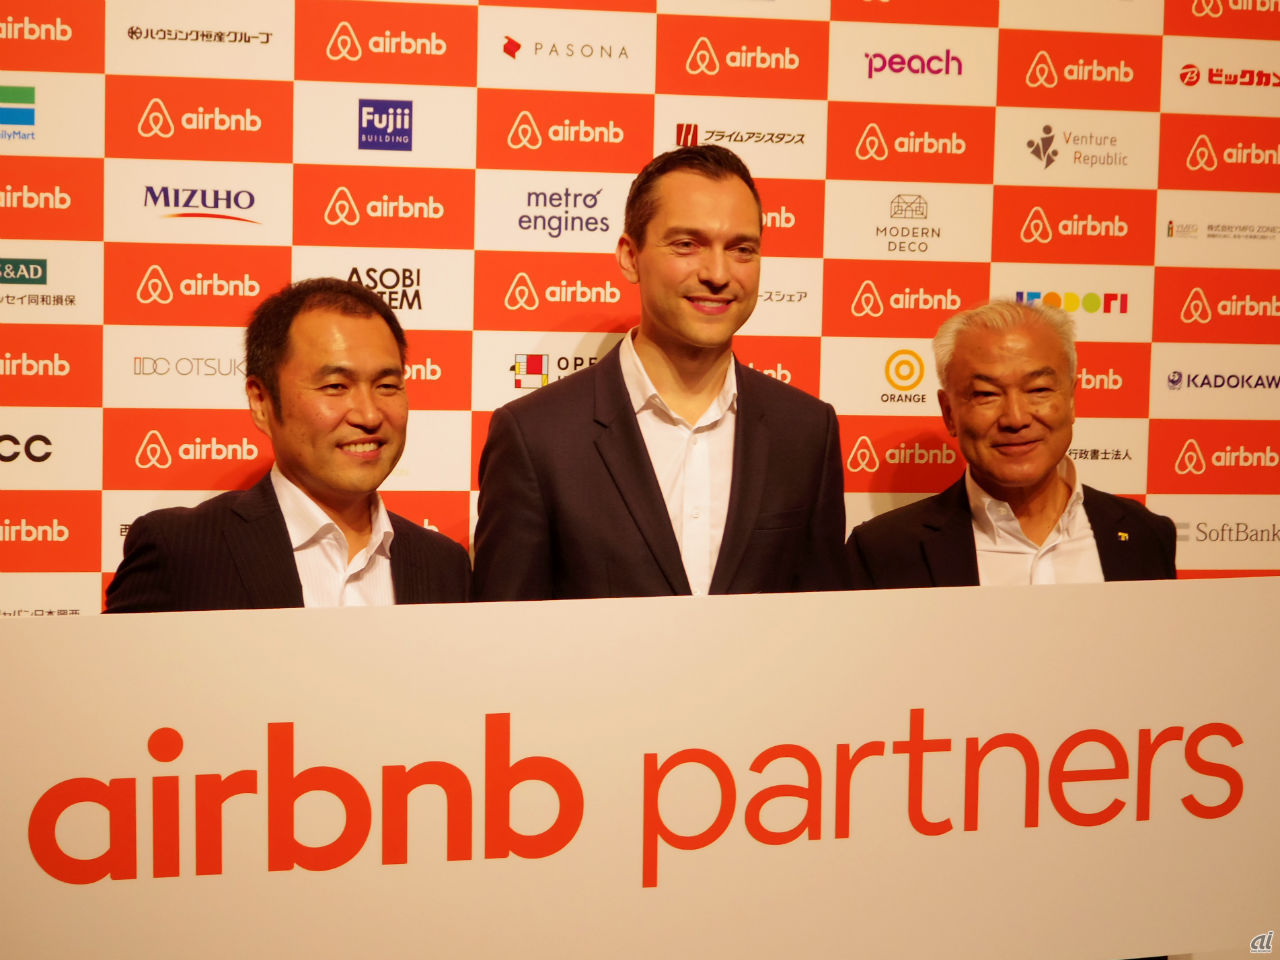 左から、Airbnb Japan 代表取締役の田邉泰之氏、Airbnb共同創設者兼最高戦略責任者、Airbnb China会長のネイサン・ブレチャージク氏、カルチュア・コンビニエンス・クラブ（CCC）代表取締役社長兼CEOの増田宗昭氏